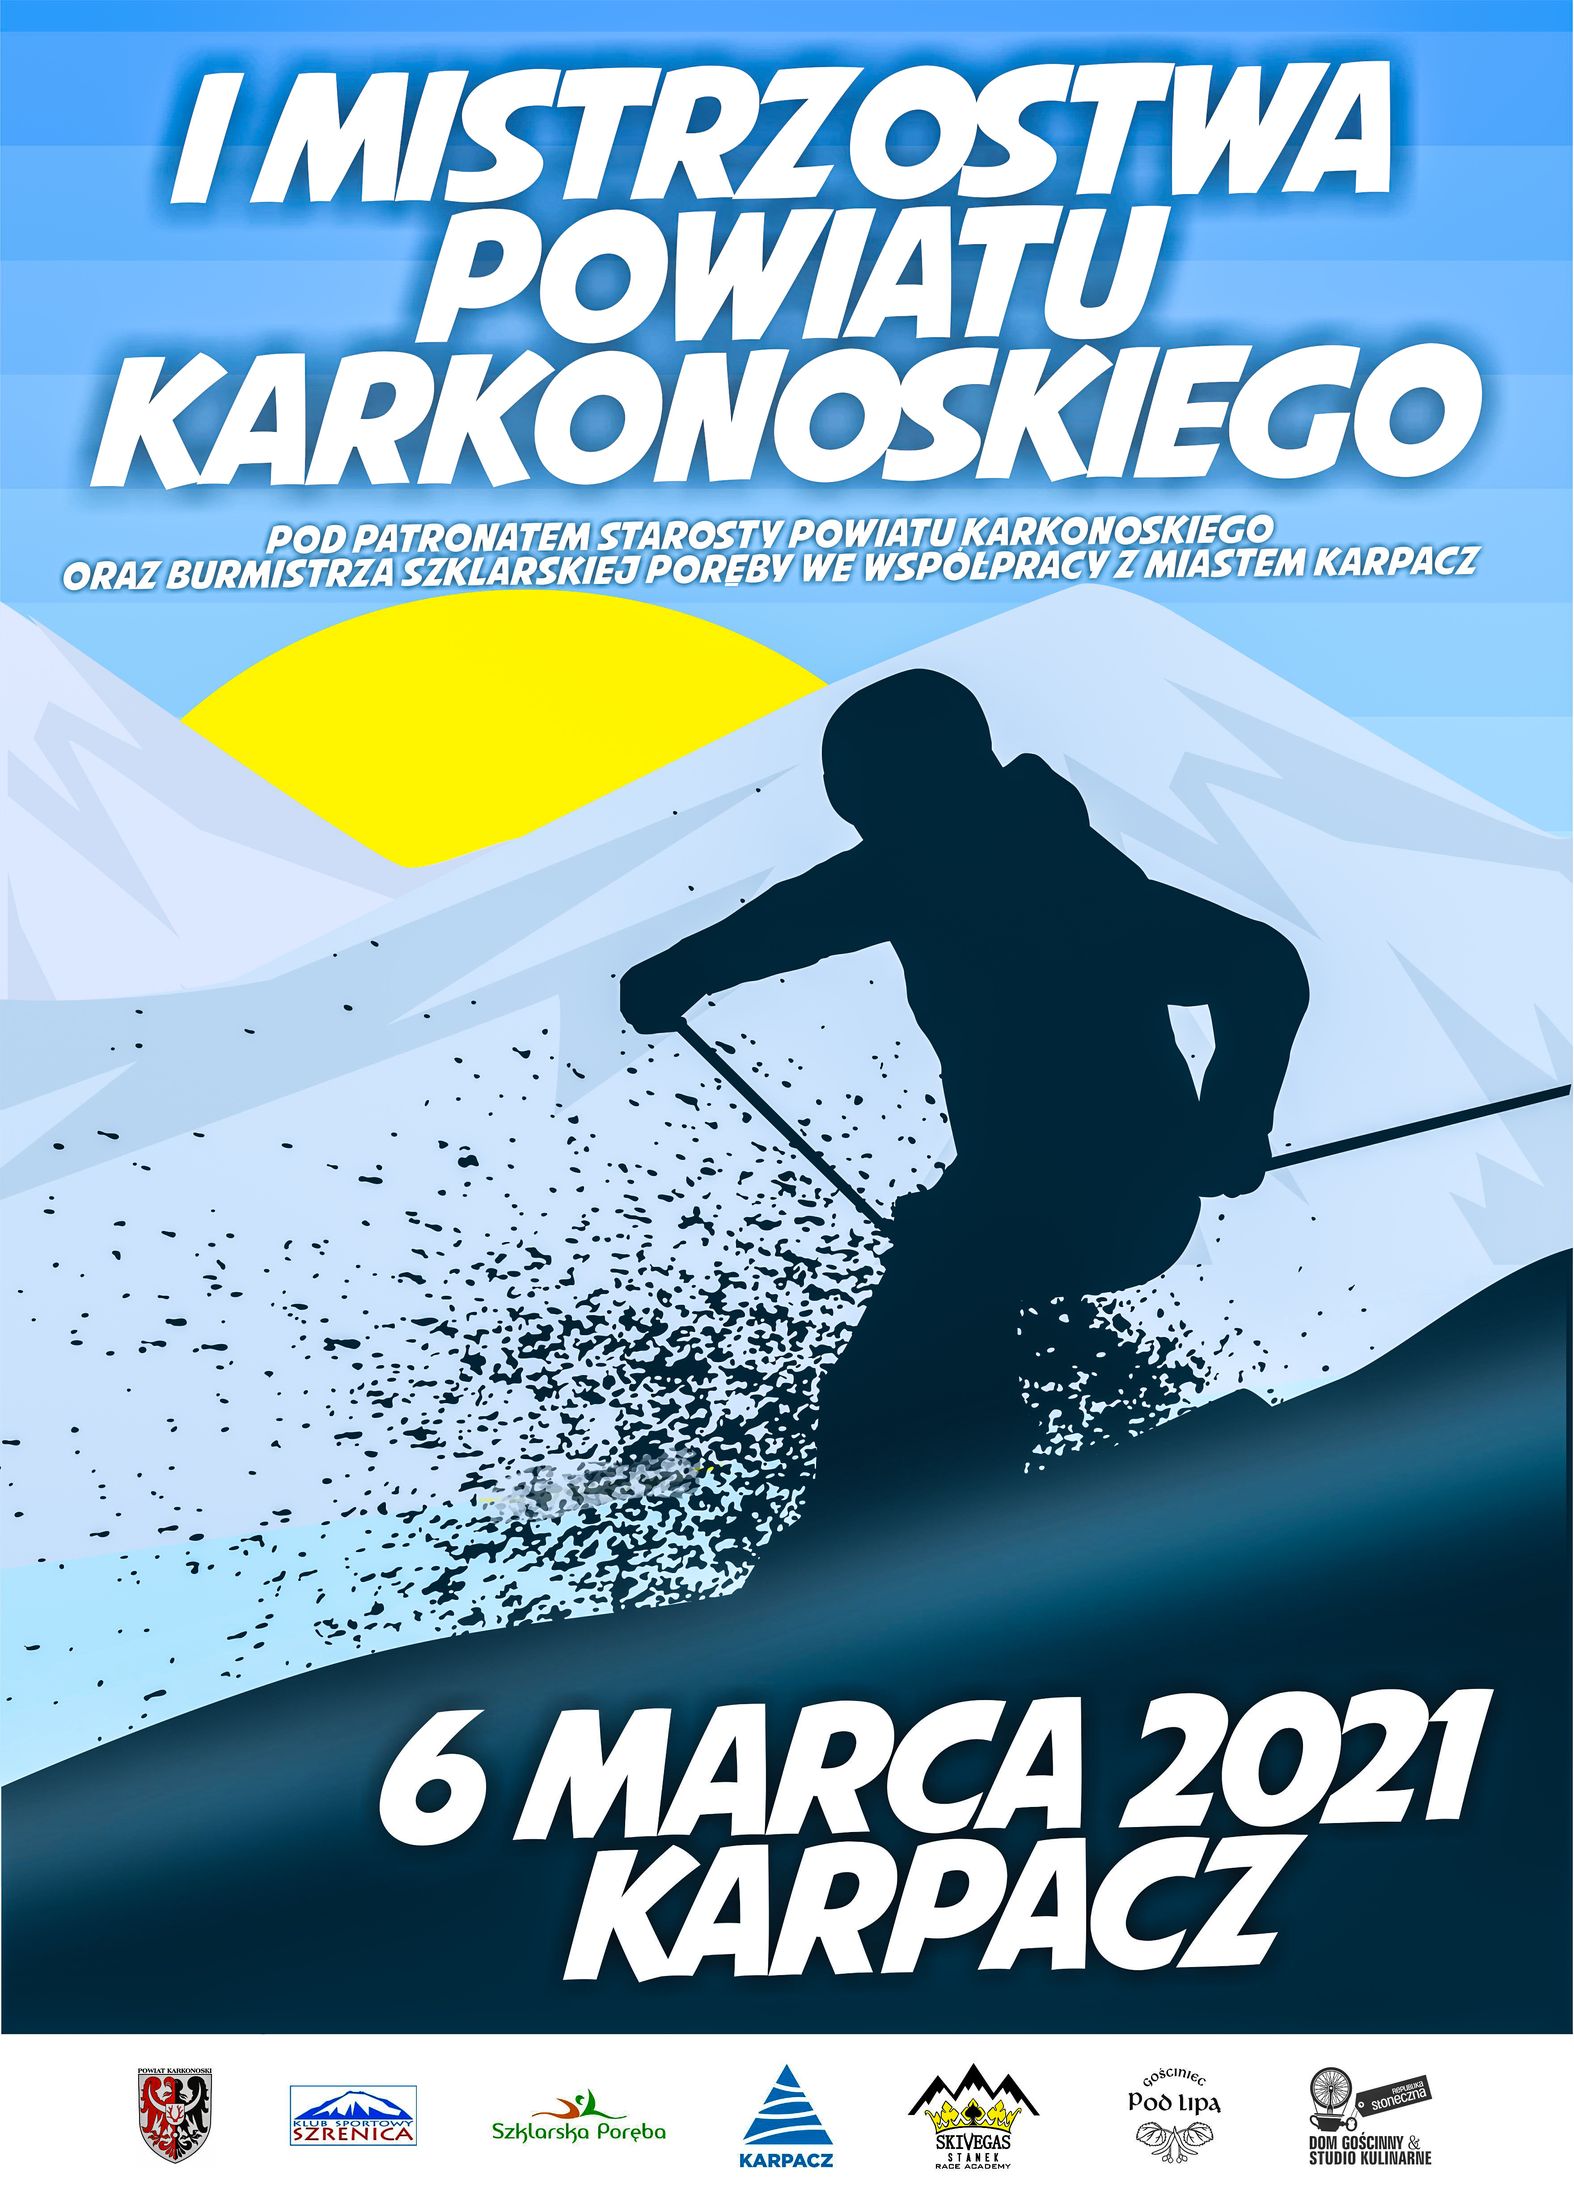 Mistrzostwa powiatu karkonoskiego 6 marca 2021